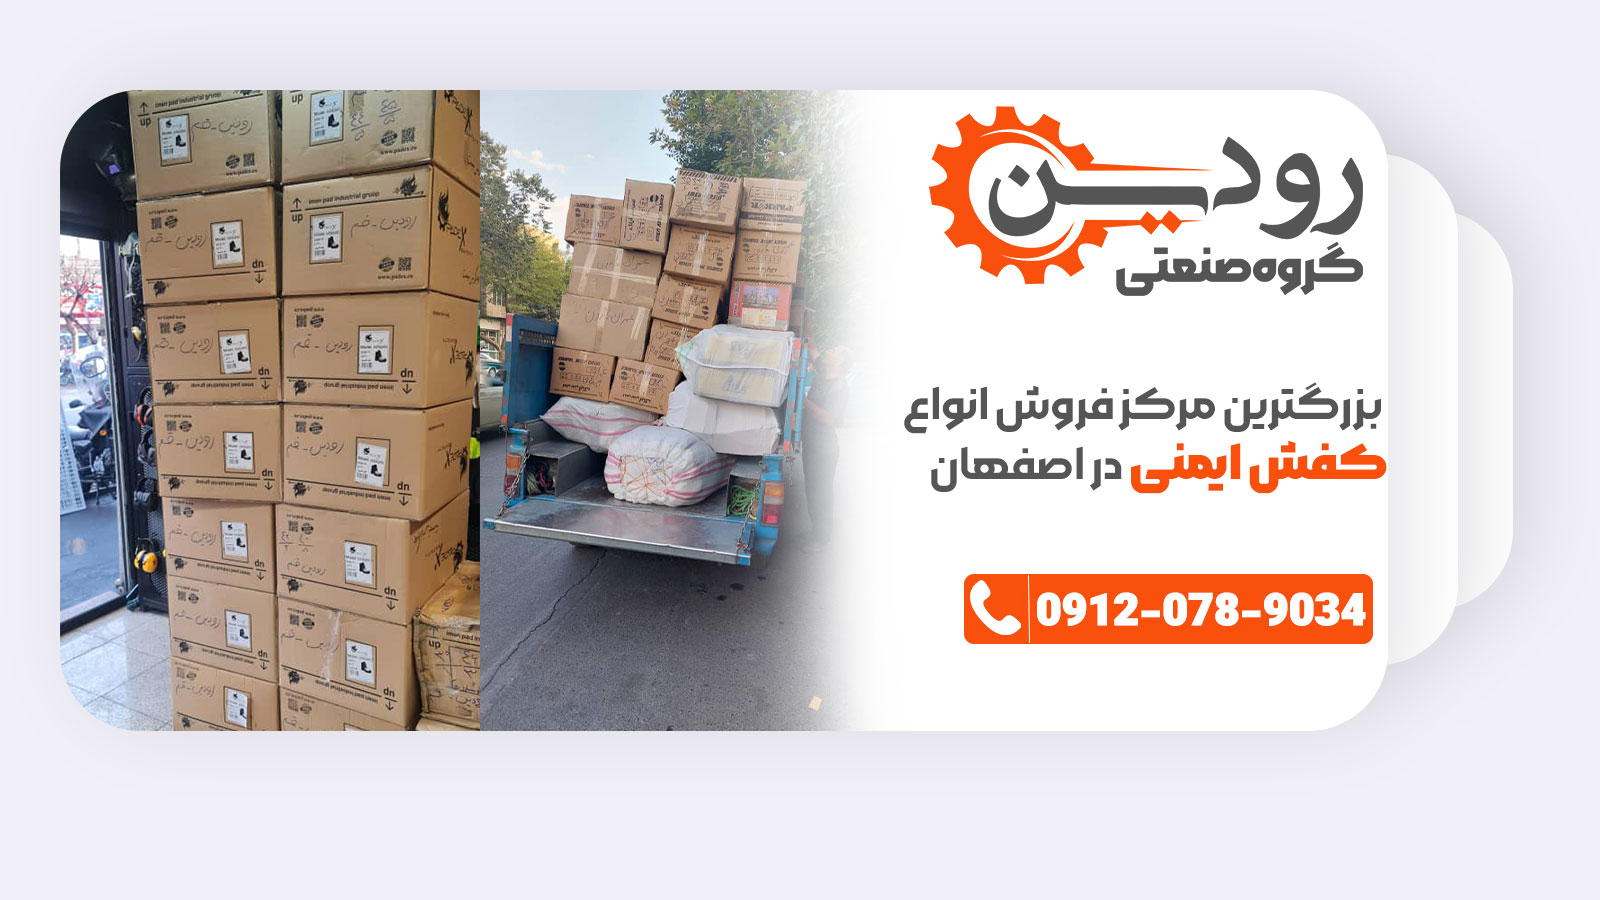 فروشگاه کفش ایمنی اصفهان امکان خرید عمده کفش ایمنی را بصورت اینترنتی فراهم کرده.